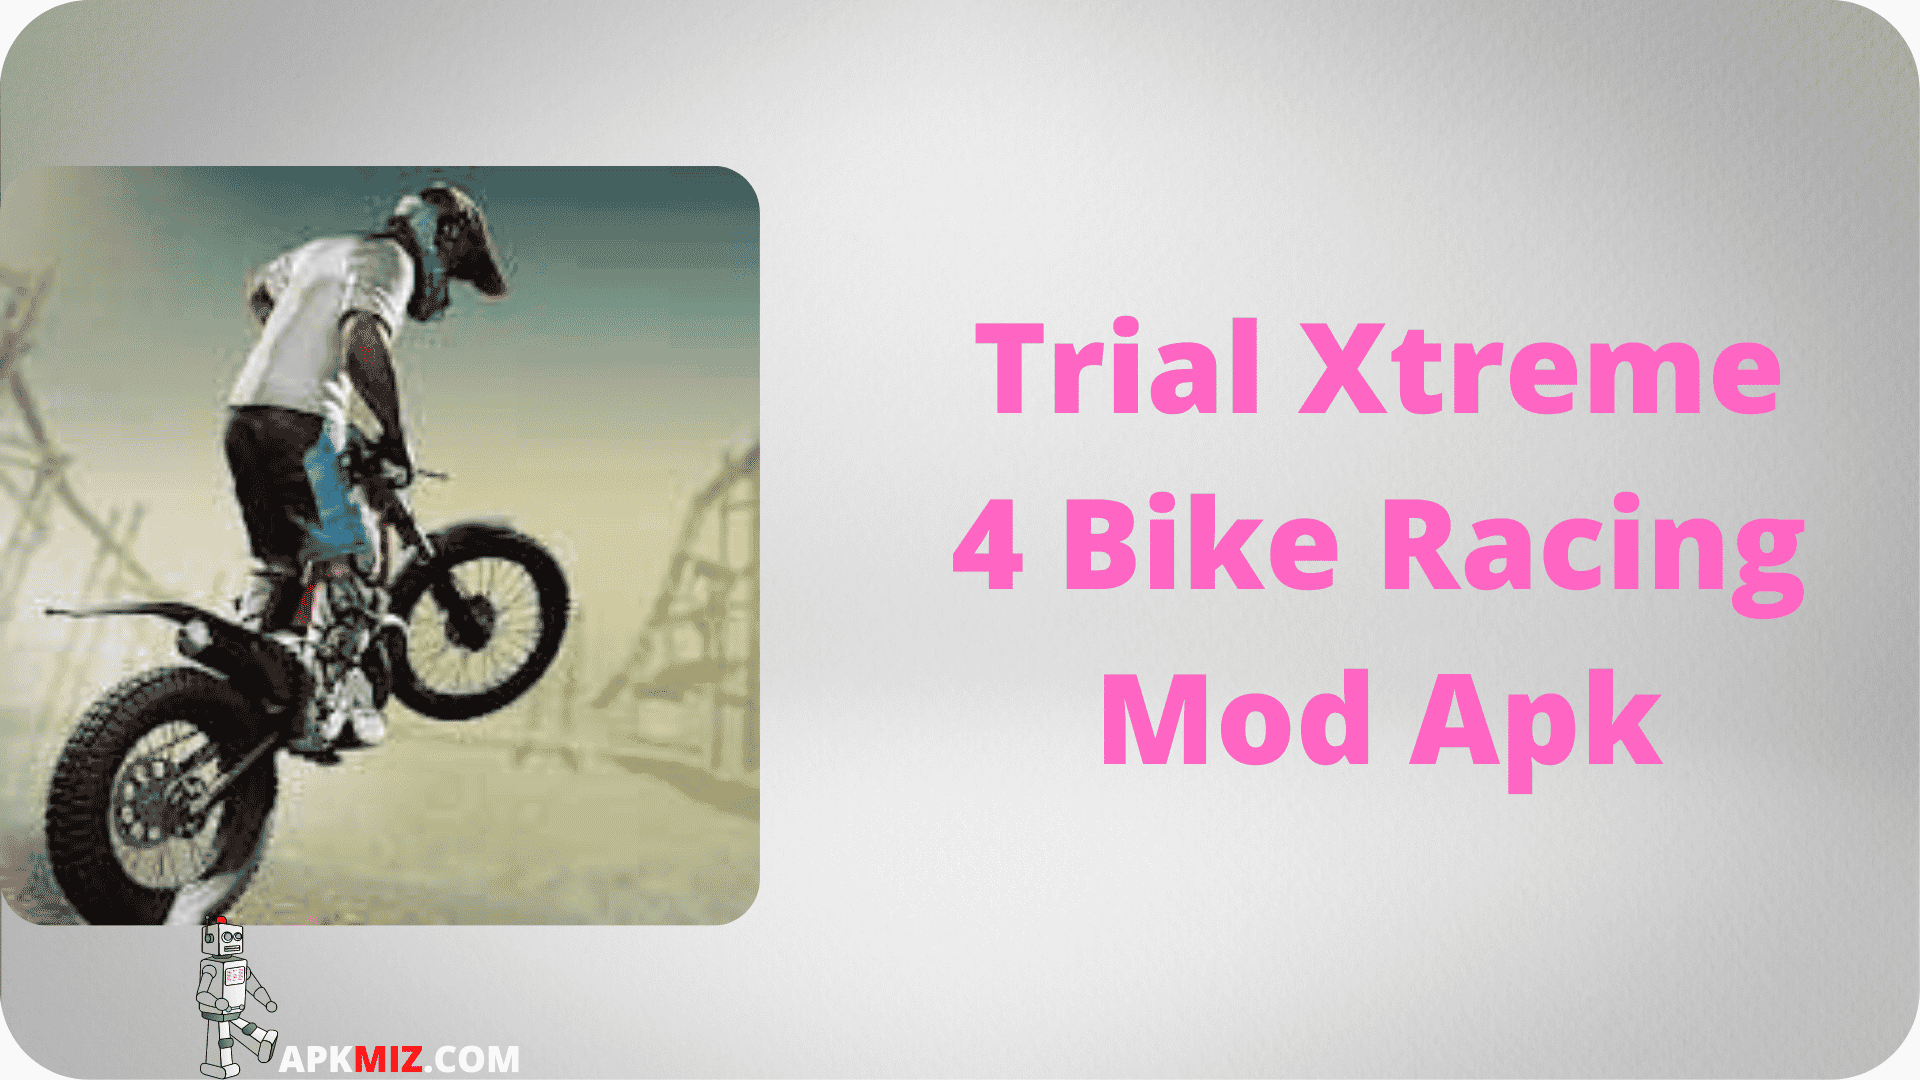 Trial Xtreme 4 Bike Racing Mod Apk